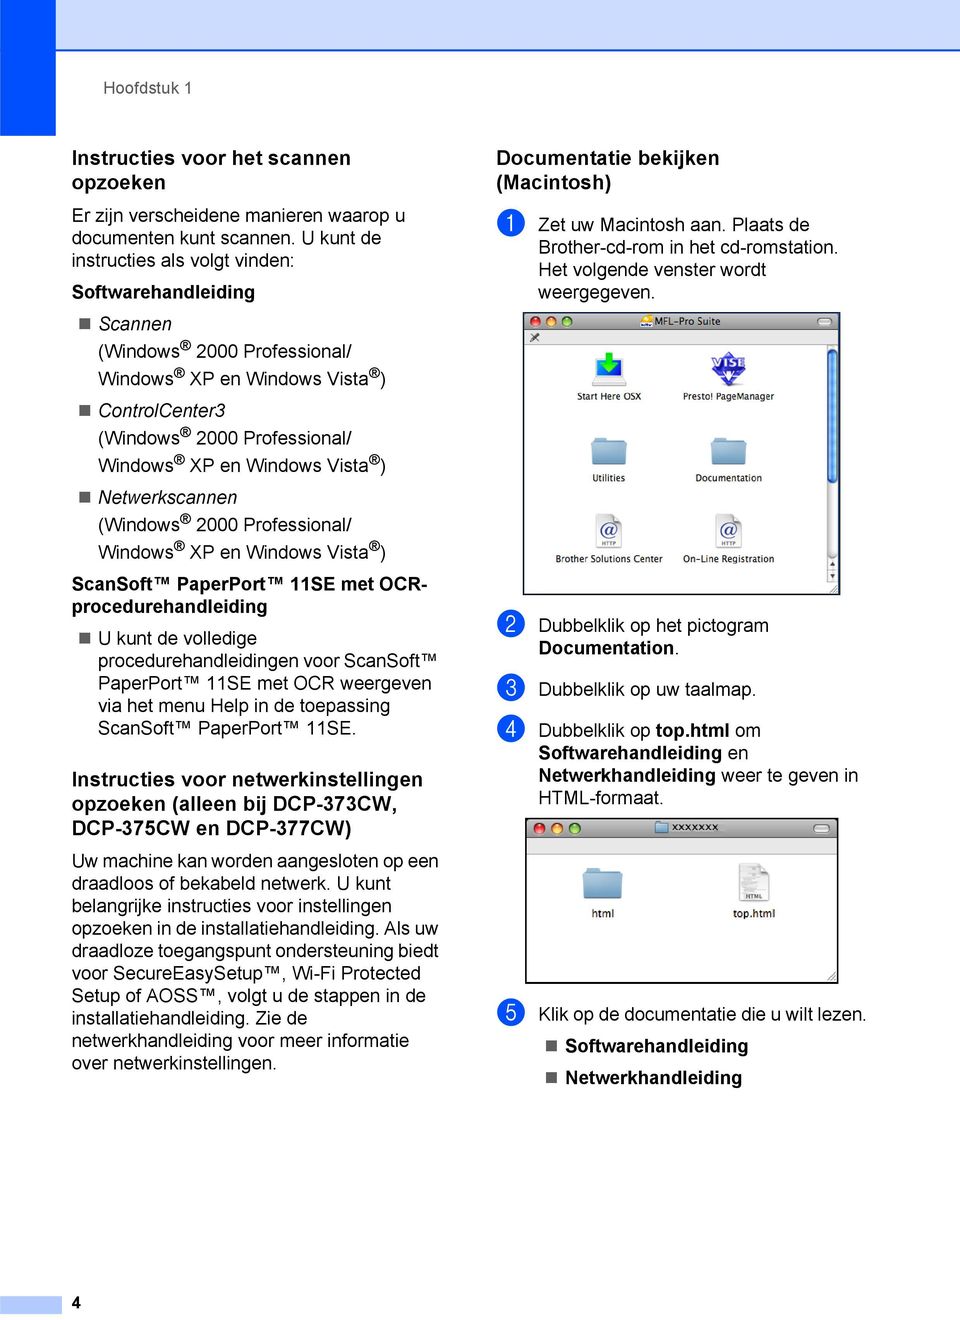 Netwerkscannen (Windows 2000 Professional/ Windows XP en Windows Vista ) ScanSoft PaperPort 11SE met OCRprocedurehandleiding U kunt de volledige procedurehandleidingen voor ScanSoft PaperPort 11SE